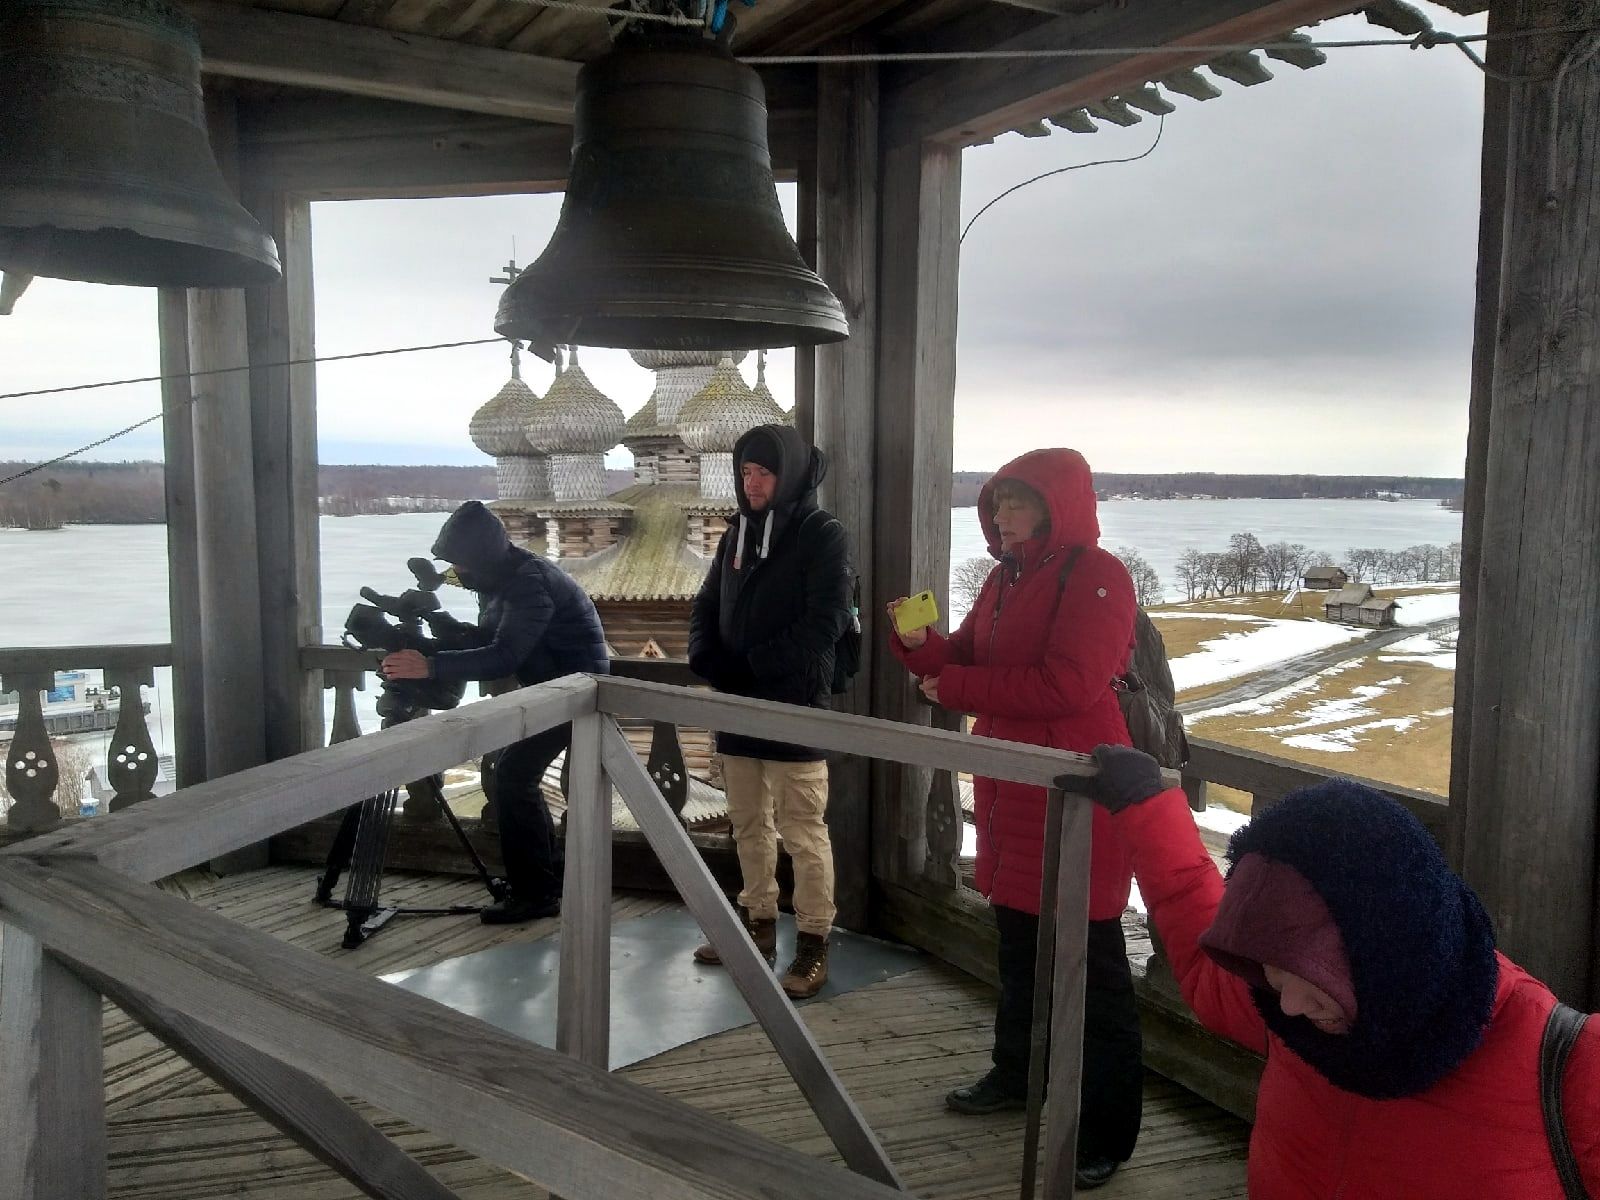 Televisiotoimittajat ovat kuvaamassa parhaillaan ohjelmaa Kižin saarella. Kuva: Kižin museon Vkontakte-sivu